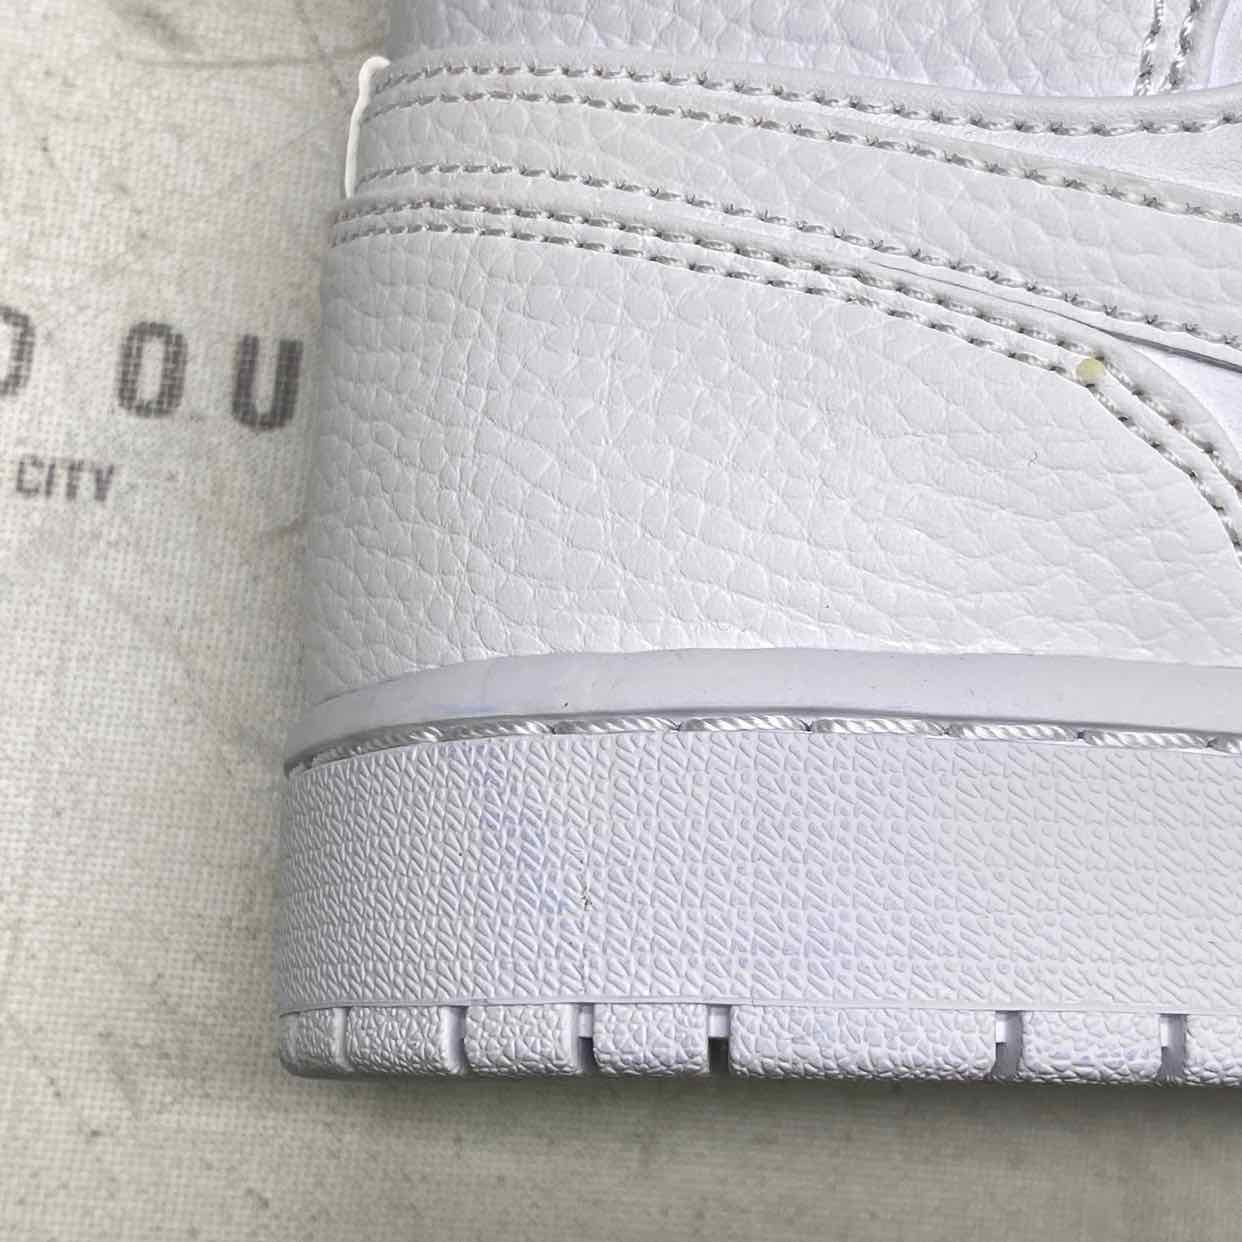 Air Jordan 1 Mid &quot;Triple White 2.0&quot; 2020 New (Cond) Size 11